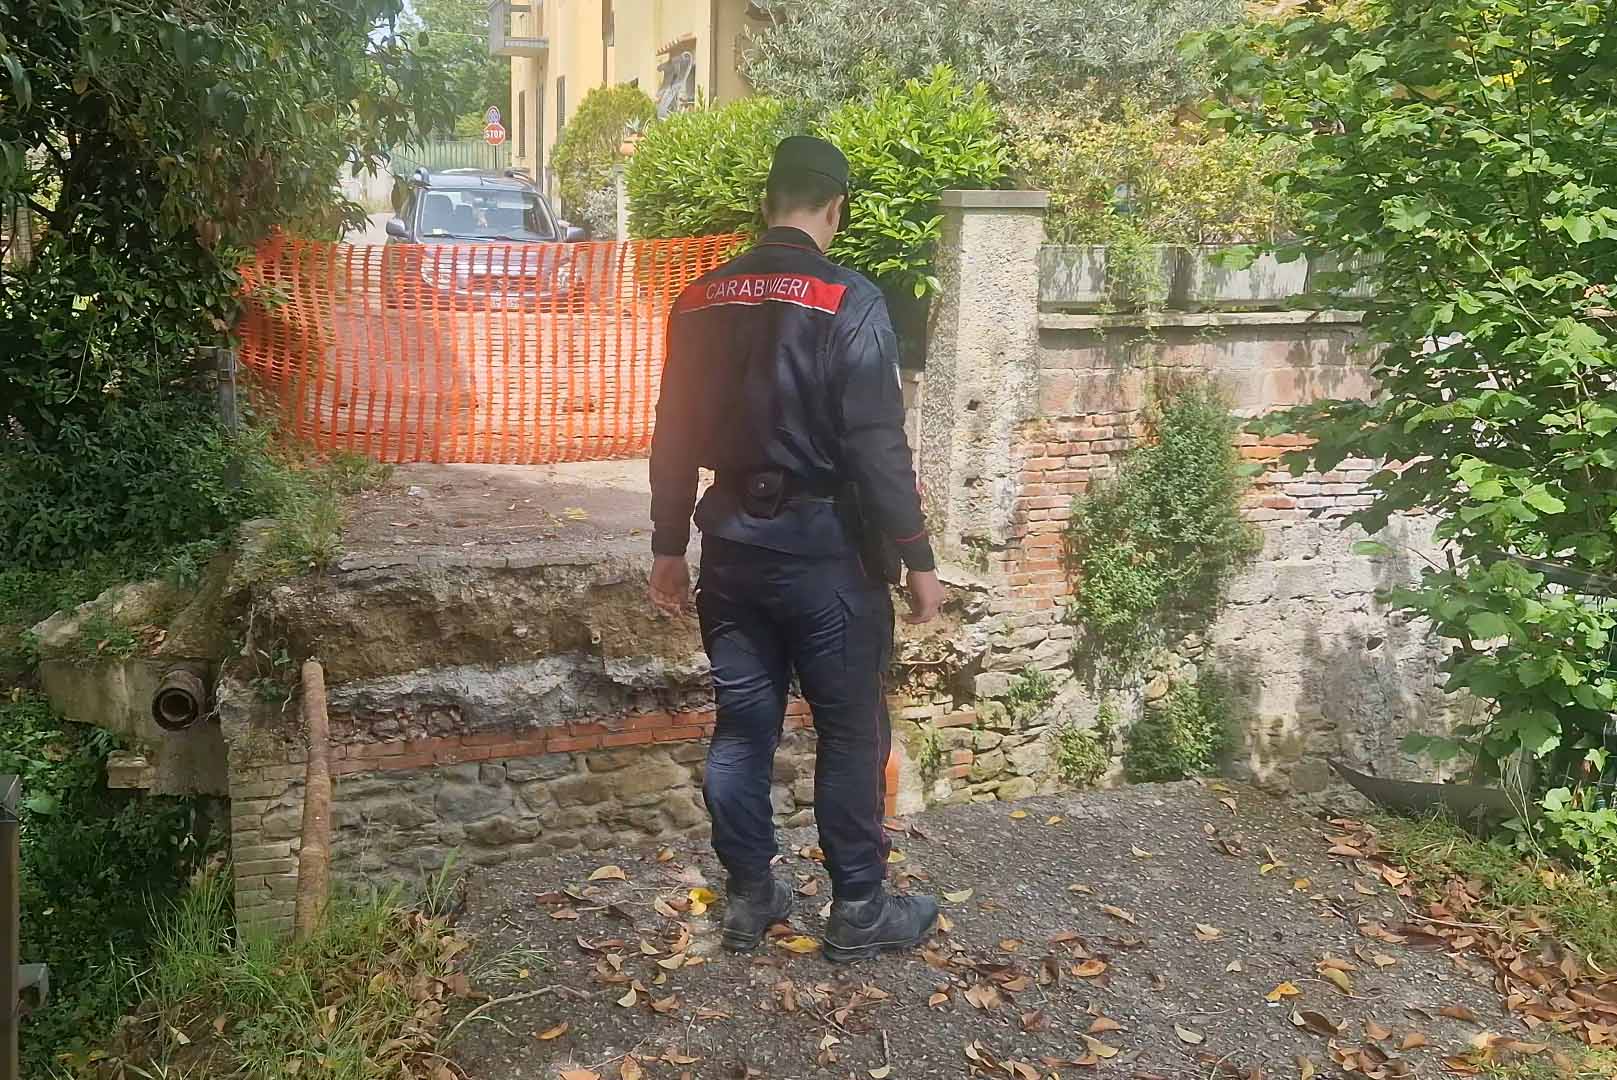 Carabinieri Forestali di Arezzo intensificano controlli lungo fiumi e corsi d’acqua: contro abusi e la sicurezza idraulica